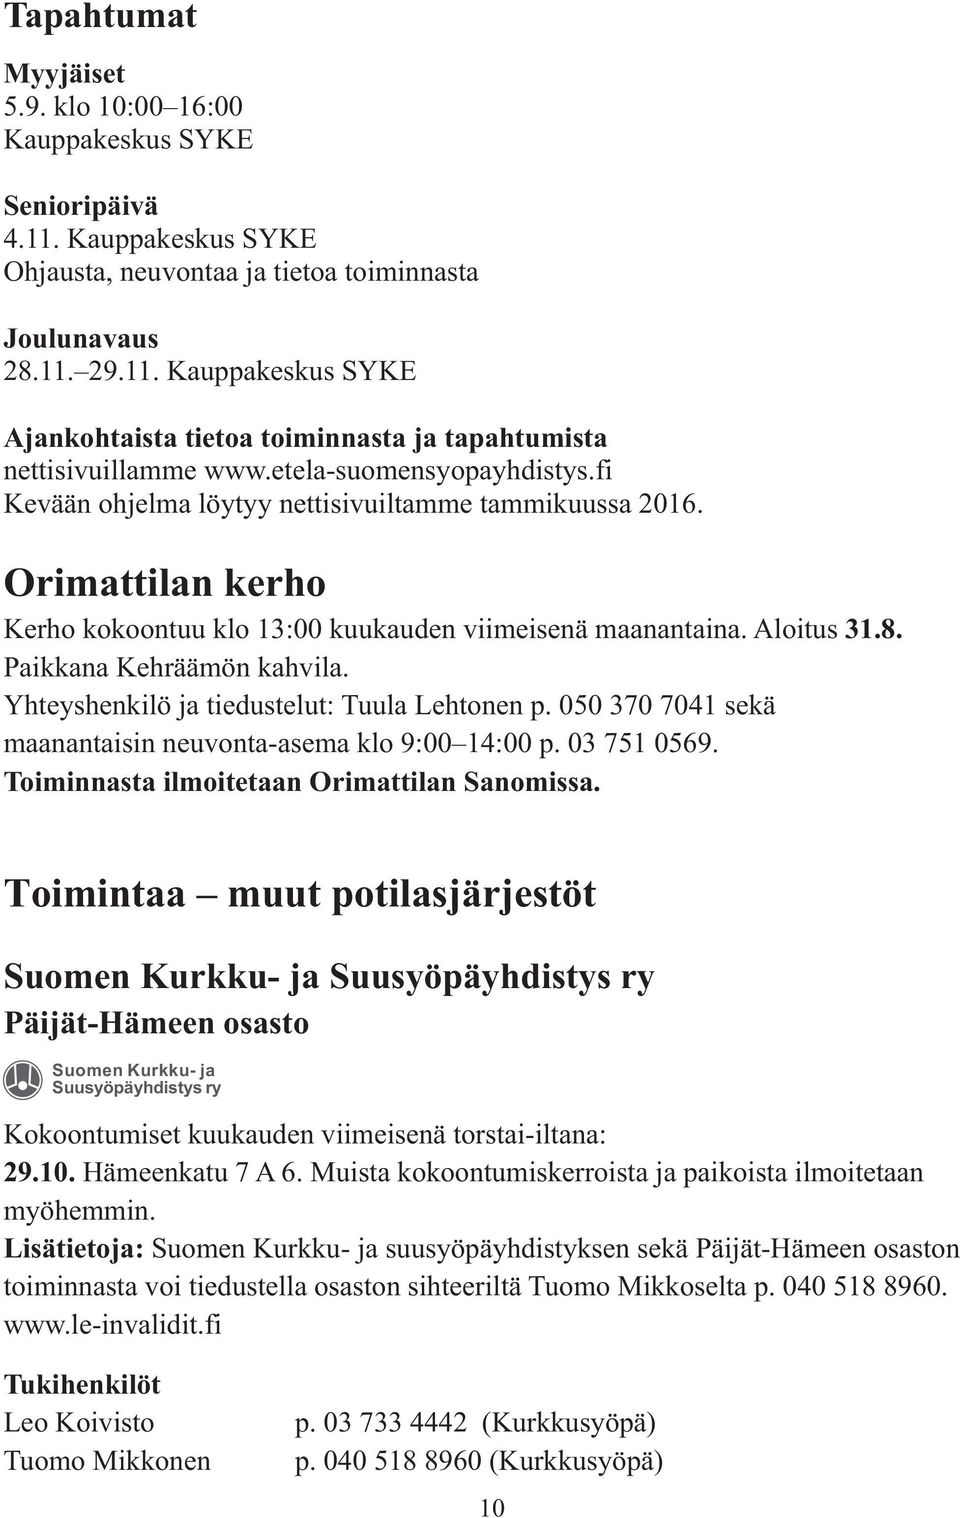 Paikkana Kehräämön kahvila. Yhteyshenkilö ja tiedustelut: Tuula Lehtonen p. 050 370 7041 sekä maanantaisin neuvonta-asema klo 9:00 14:00 p. 03 751 0569. Toiminnasta ilmoitetaan Orimattilan Sanomissa.